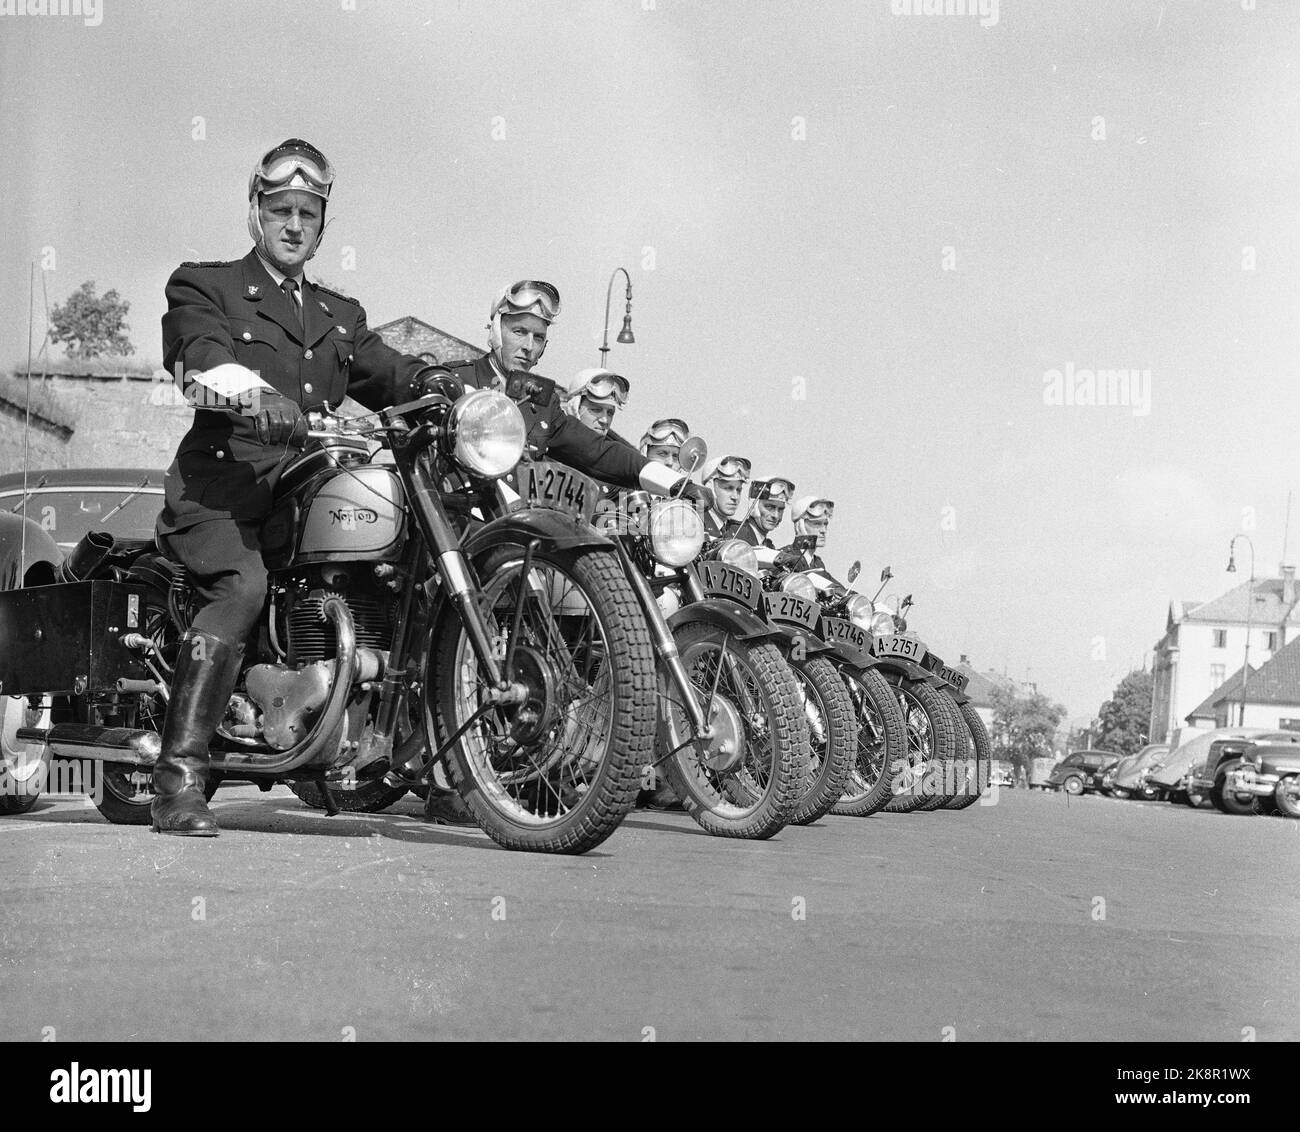 Polizei Oslo 1955 auf zwei Rädern Eine Motorradpatrouille des Oslo Police Traffic Corps geht aus, um ihre Positionen im Verkehr zu finden. Das Vorderrad ist mit Funksender und Empfänger ausgestattet, Experte mit der Ausrüstung. Die Motorradpolizei in Oslo verwendet Norton 500-Motorräder, von denen 14 zur Verfügung stehen. Die Höchstgeschwindigkeit beträgt 135-140 km/h, und die wenigen rohen Fahrer schaffen es, diese Jungs zu verlassen, wenn sie auf der Straße bleiben wollen. Mehrjährige Jungs auf ihrem eigenen Motorrad. Foto; Sverre A. Børretzen / Aktuell / NTB NB! Foto nicht Bild behandelt !!! Stockfoto